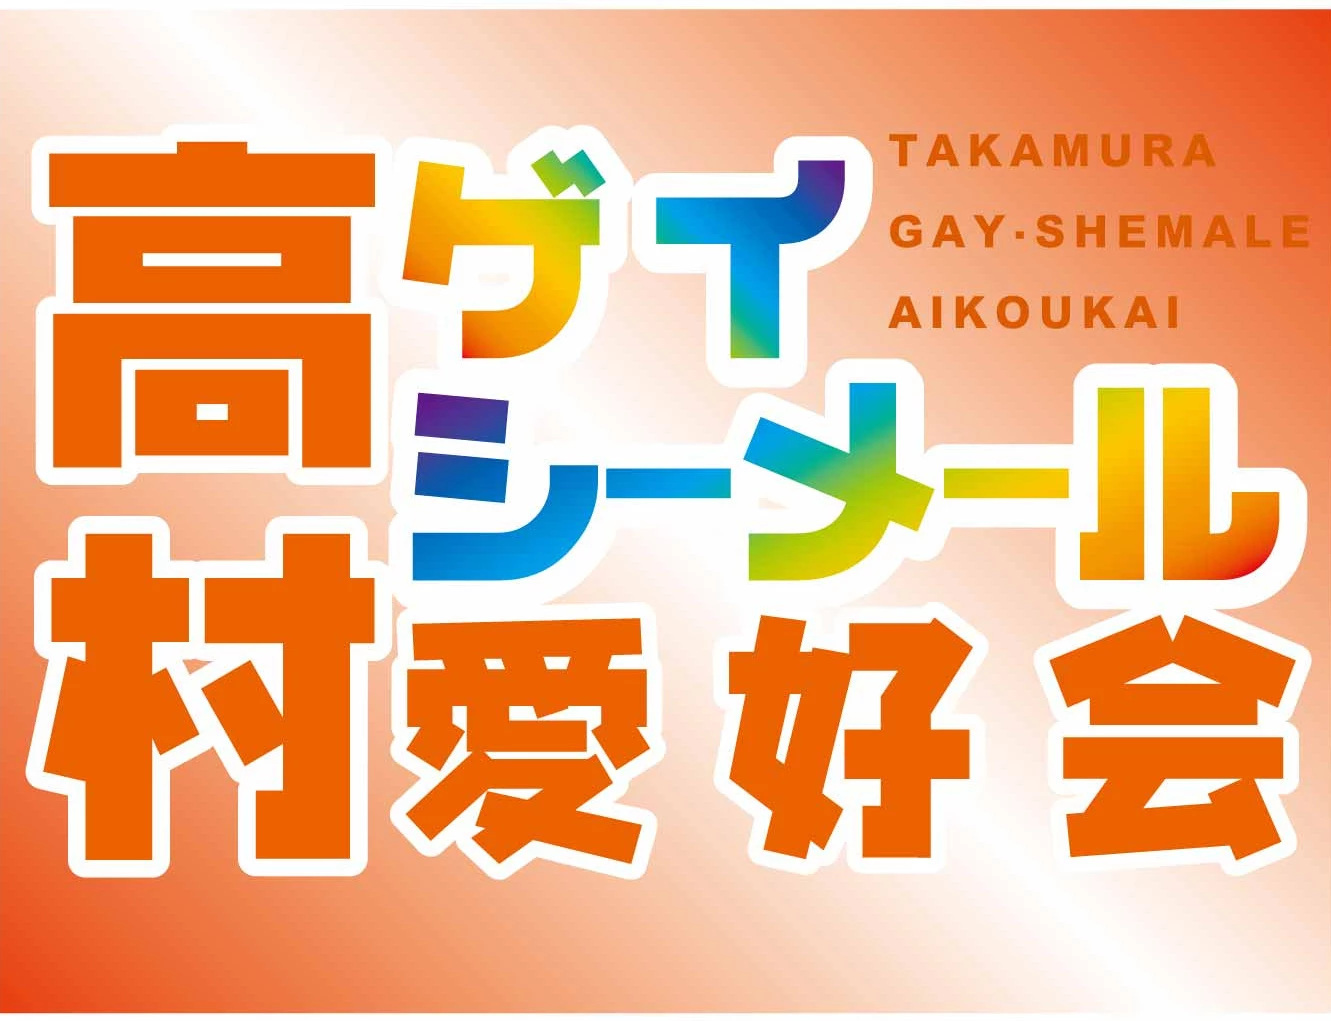 Takamura Gay & Shemale Club